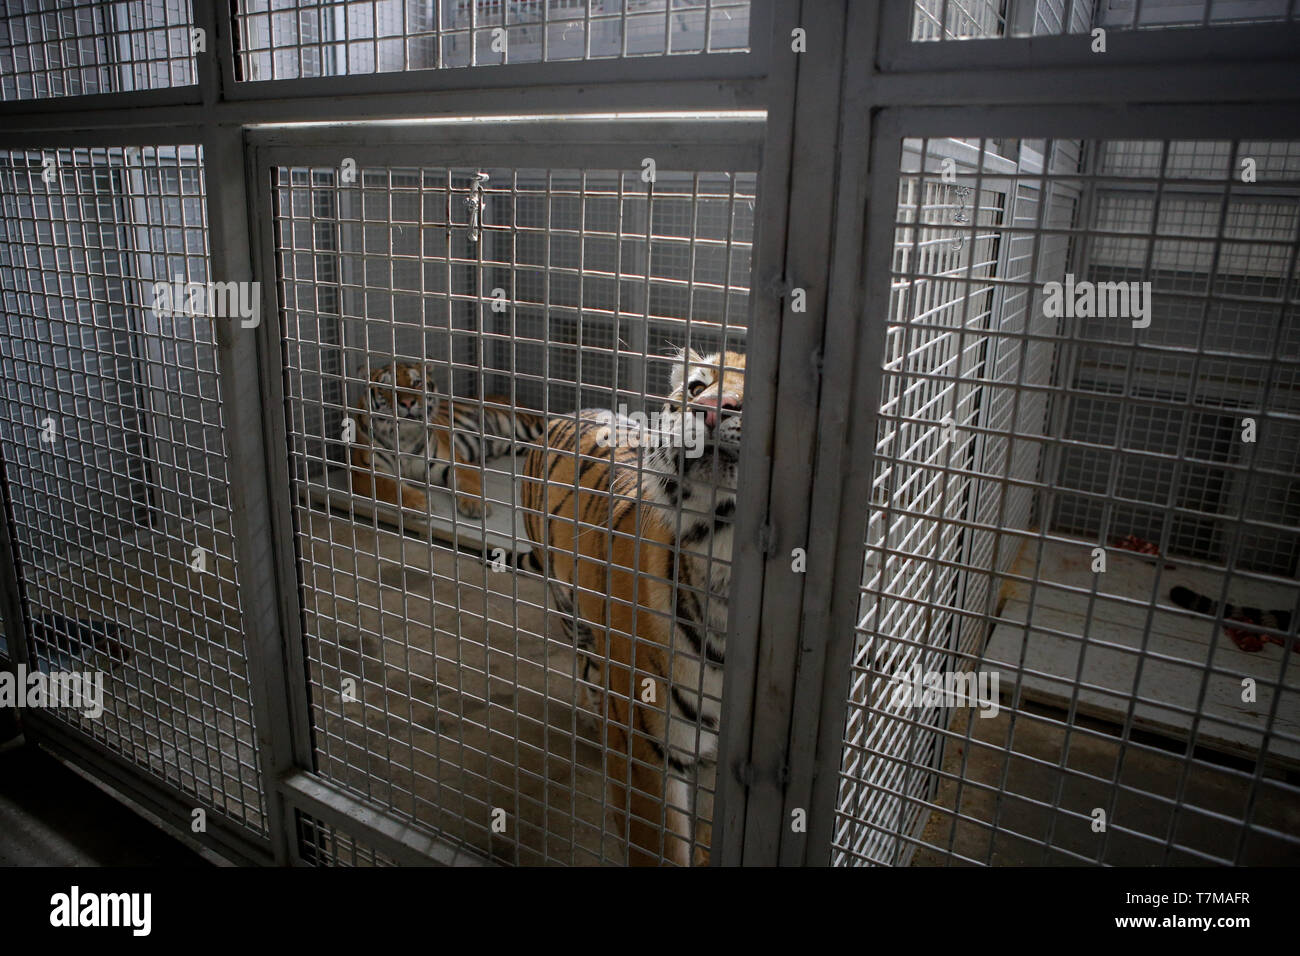 Wilde sibirische Tiger im Käfig in einem Zirkus menagerie - Tierquälerei Stockfoto